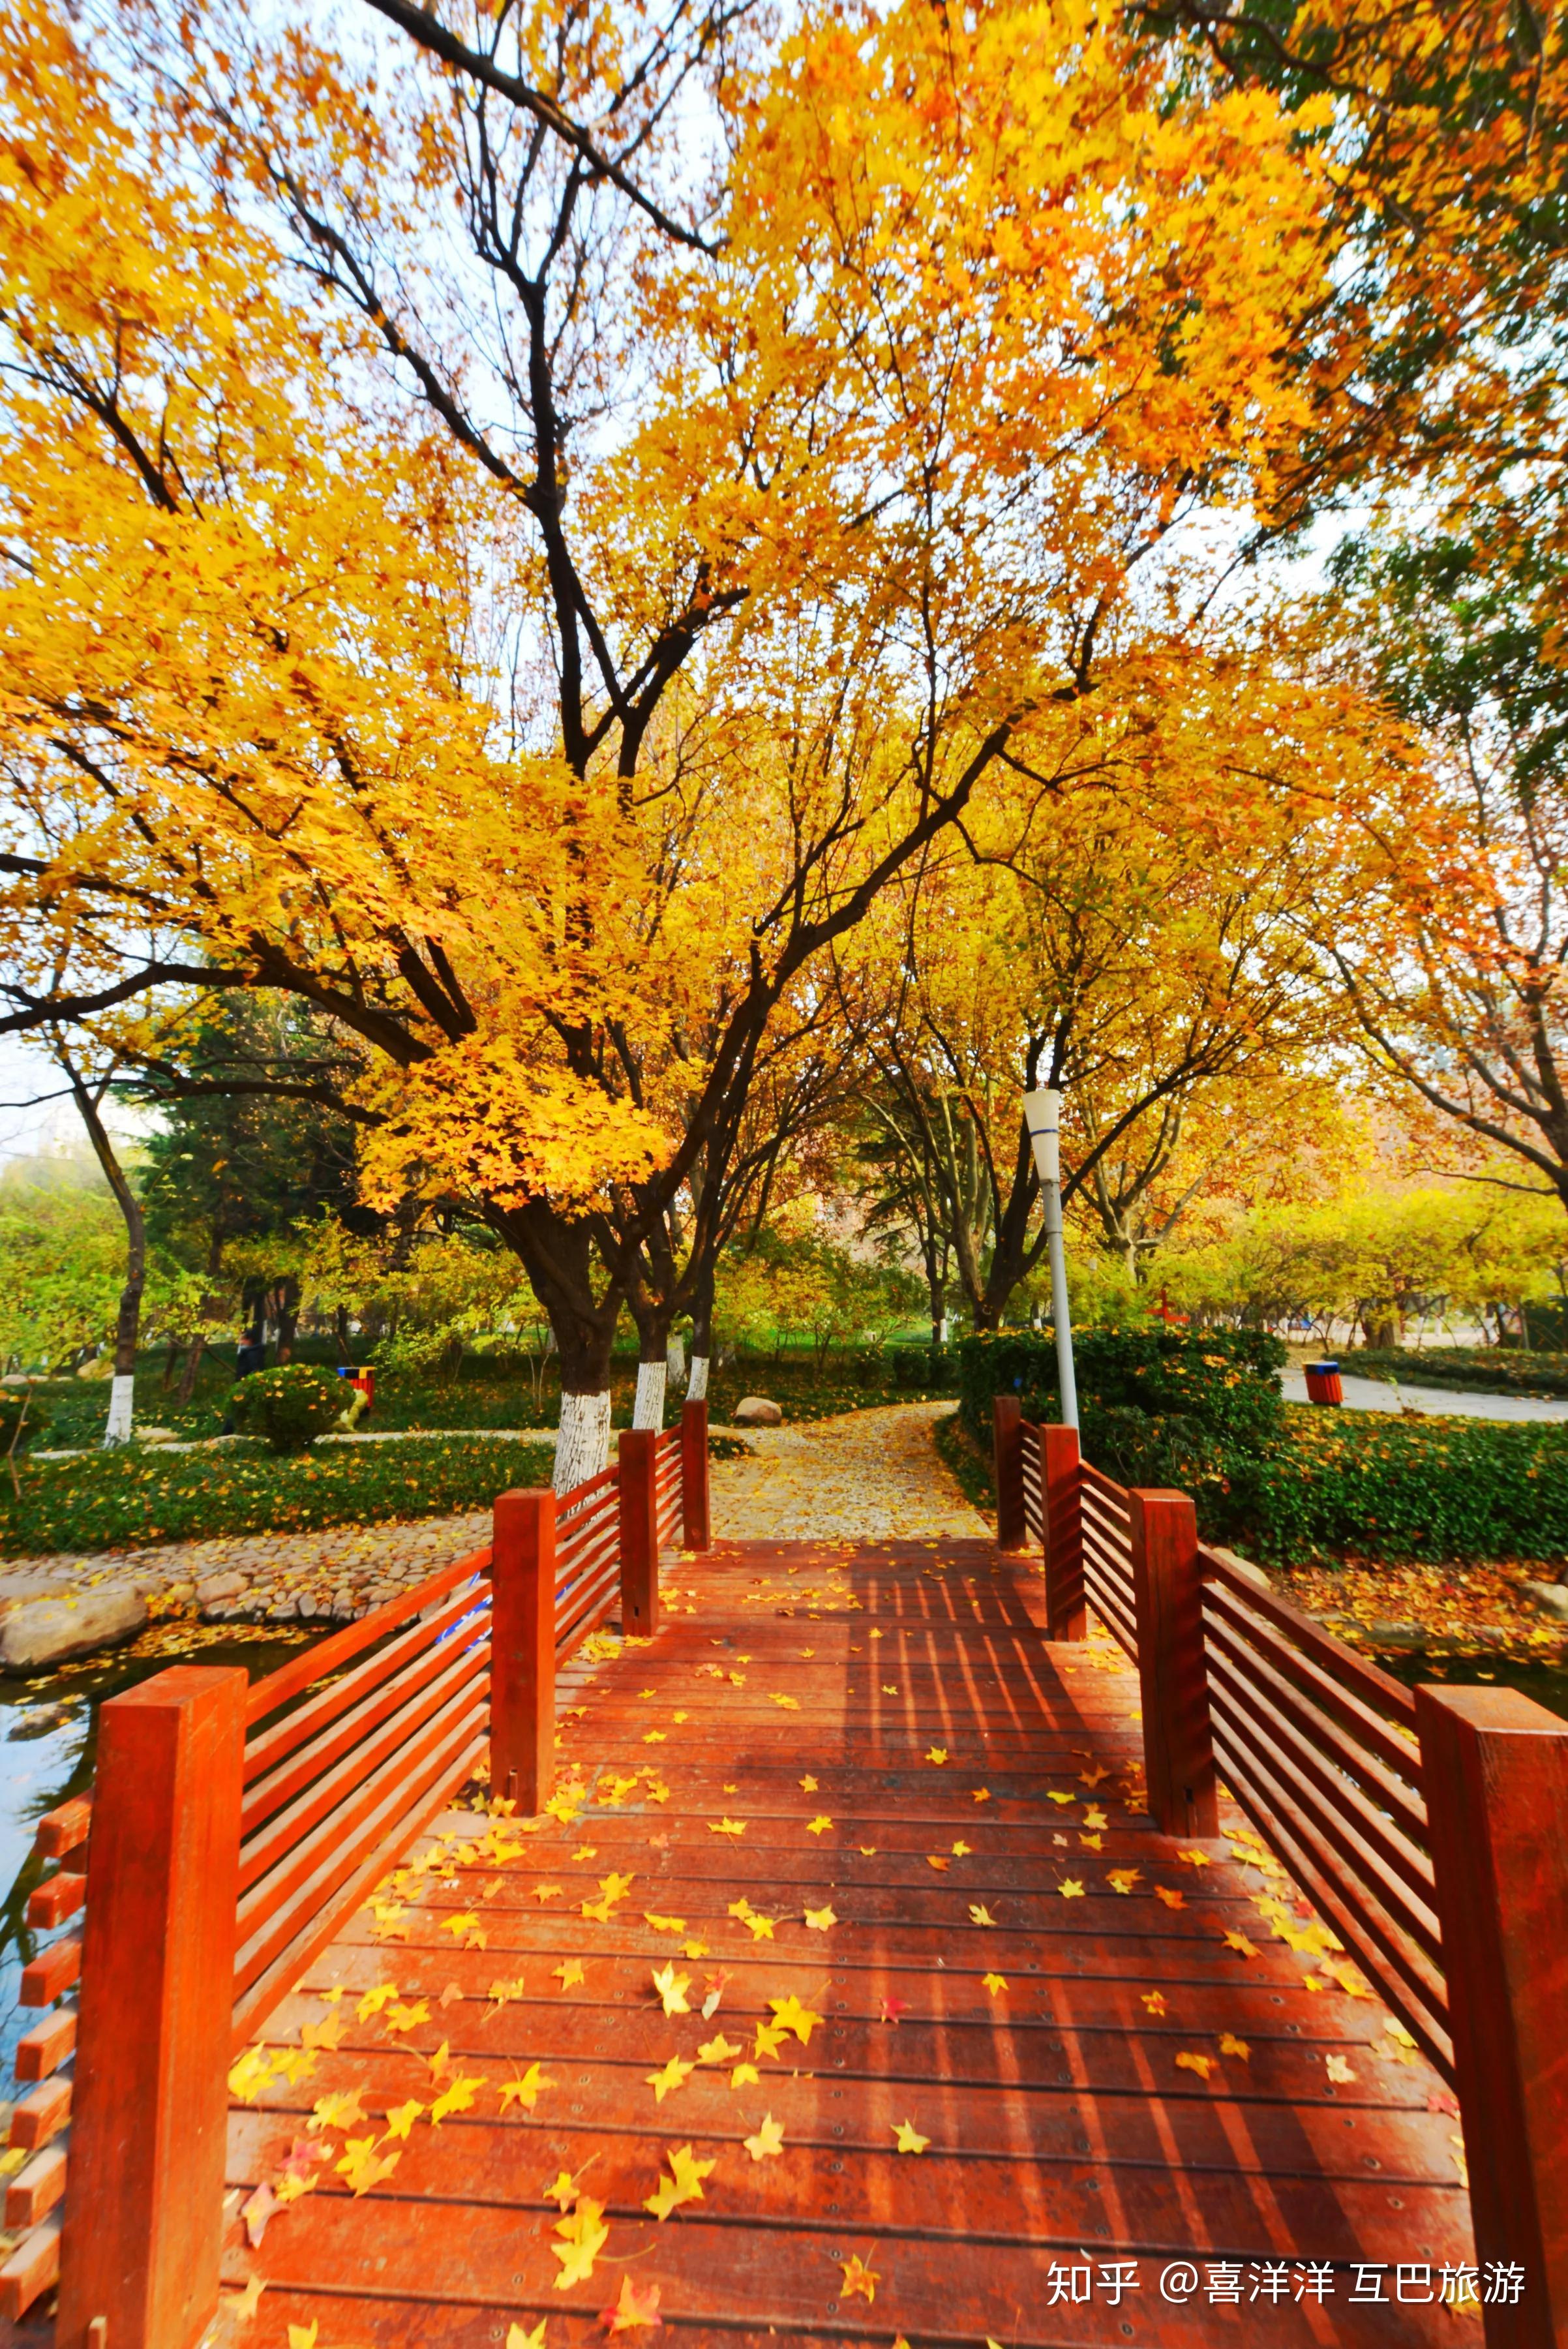 变成红叶了的枫树林,更具深秋的魅力和韵味